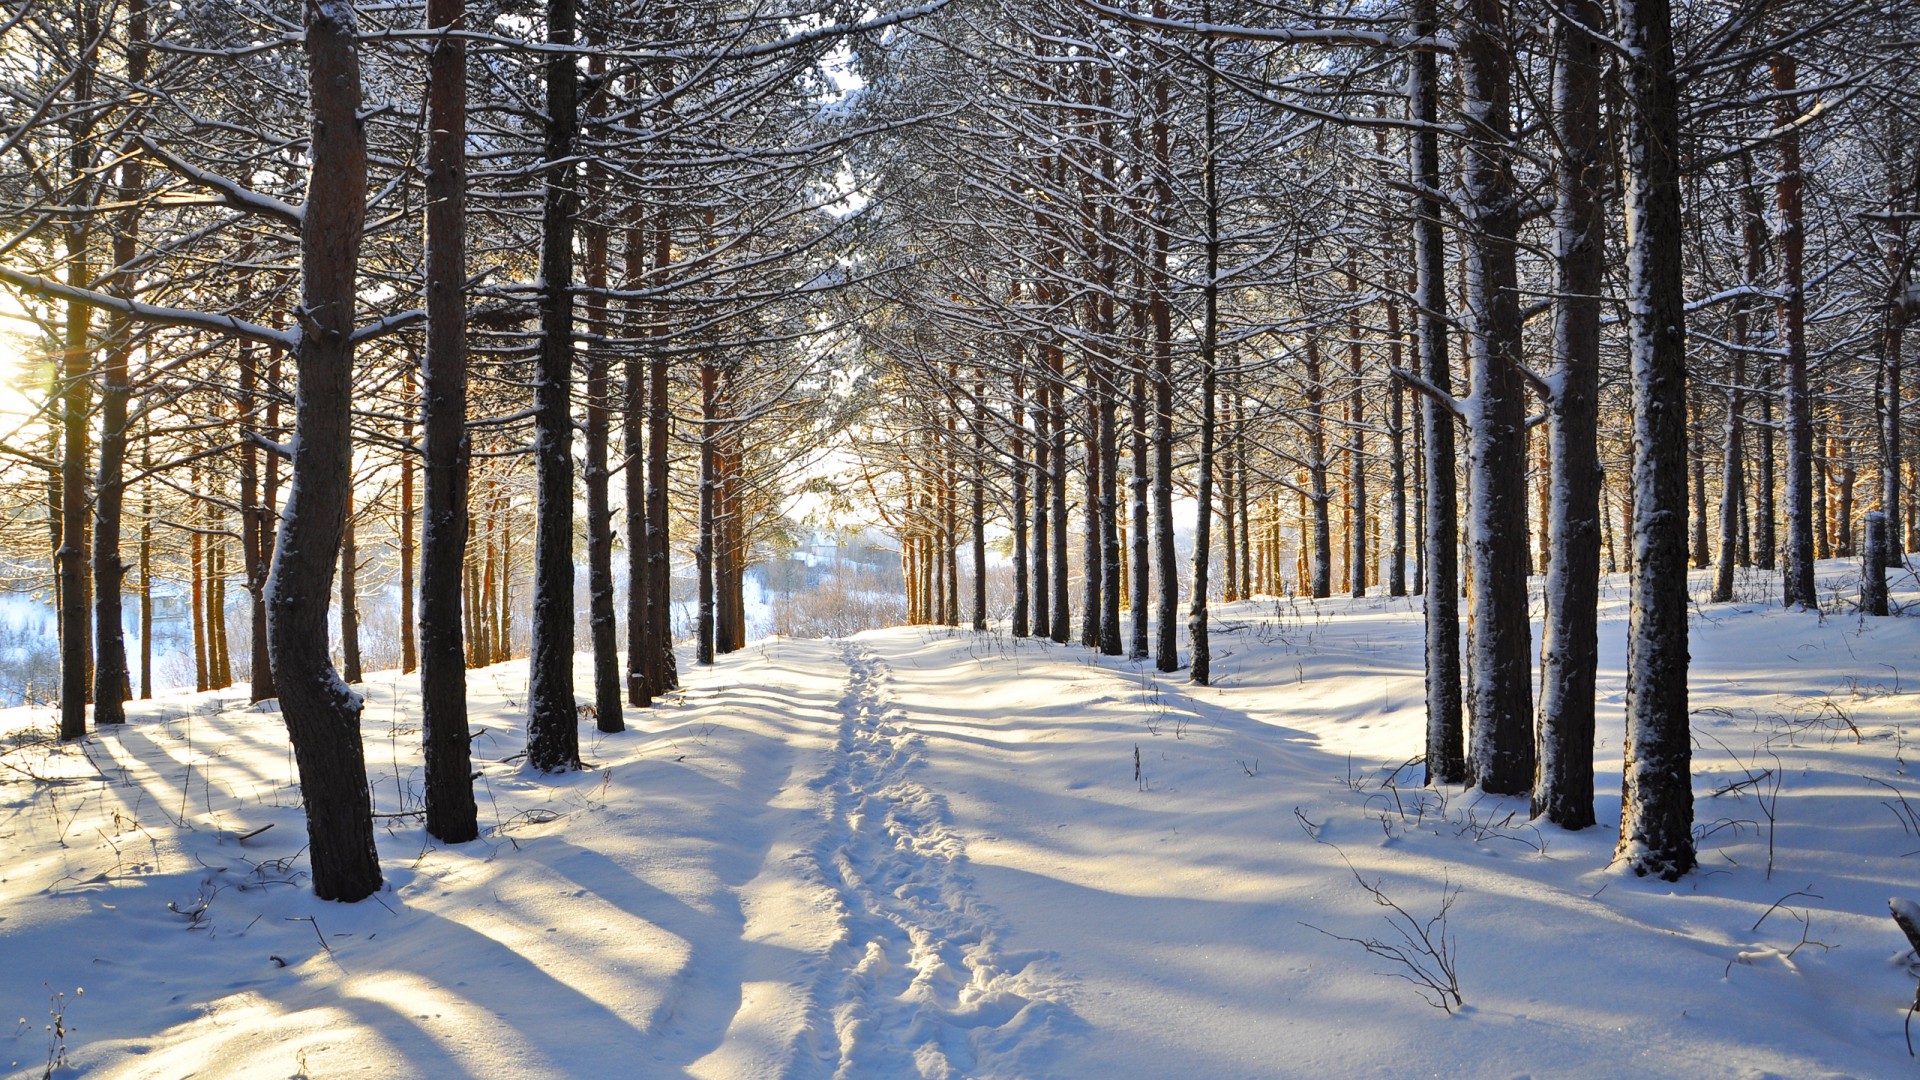 冬天,雪,树木,森林,林间空地,路,痕迹,风景桌面壁纸